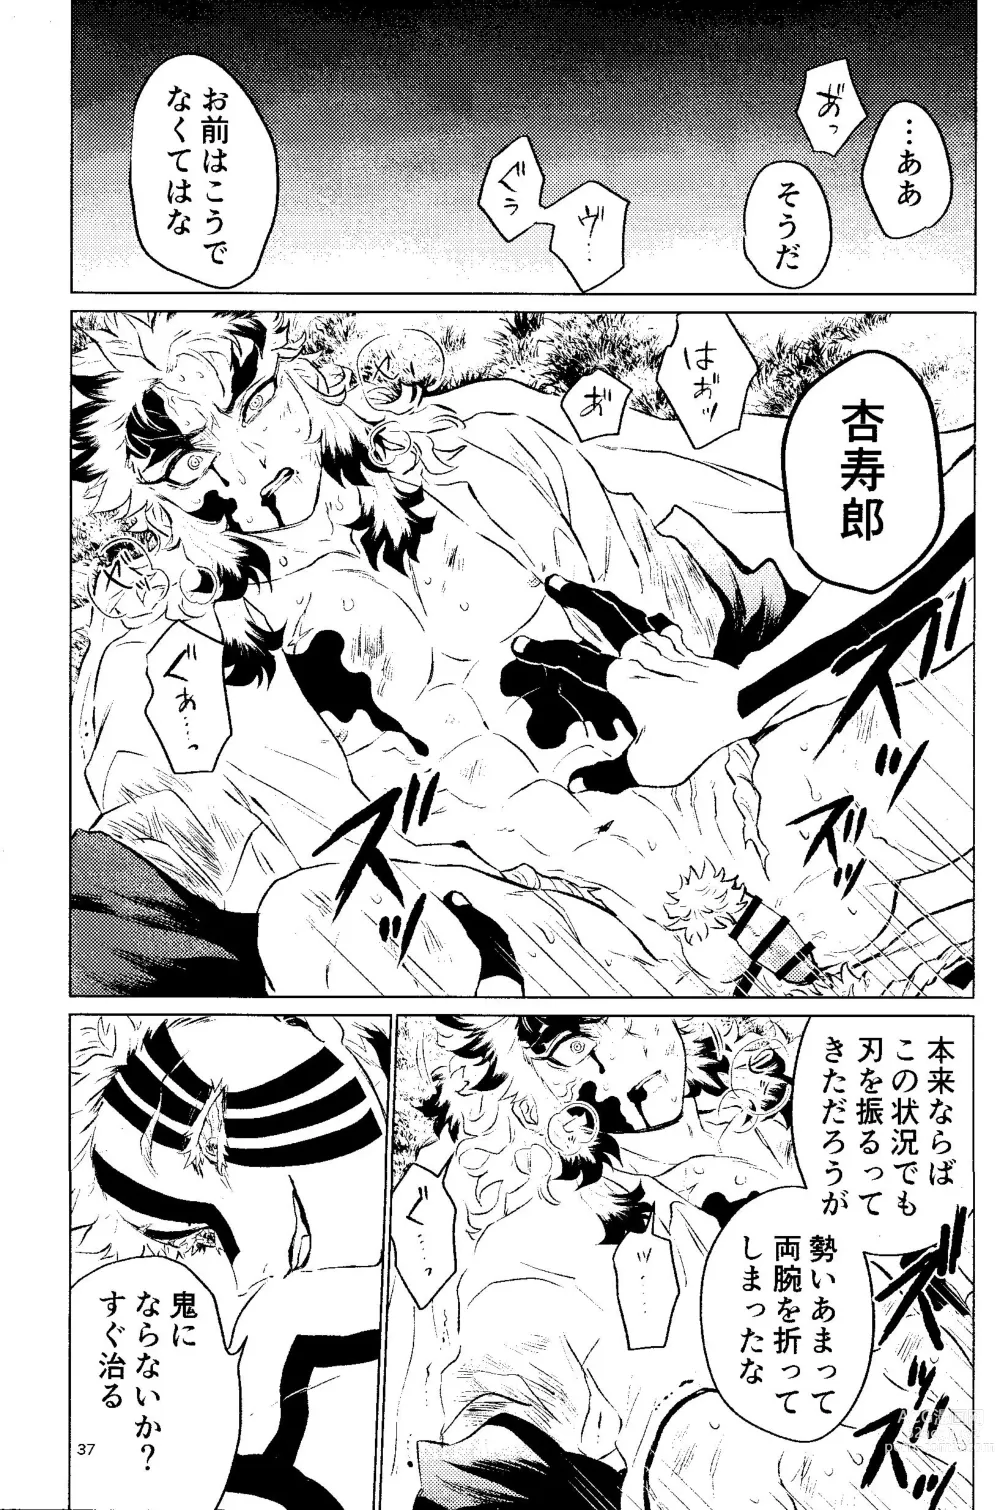 Page 34 of doujinshi Yuuen Kenki